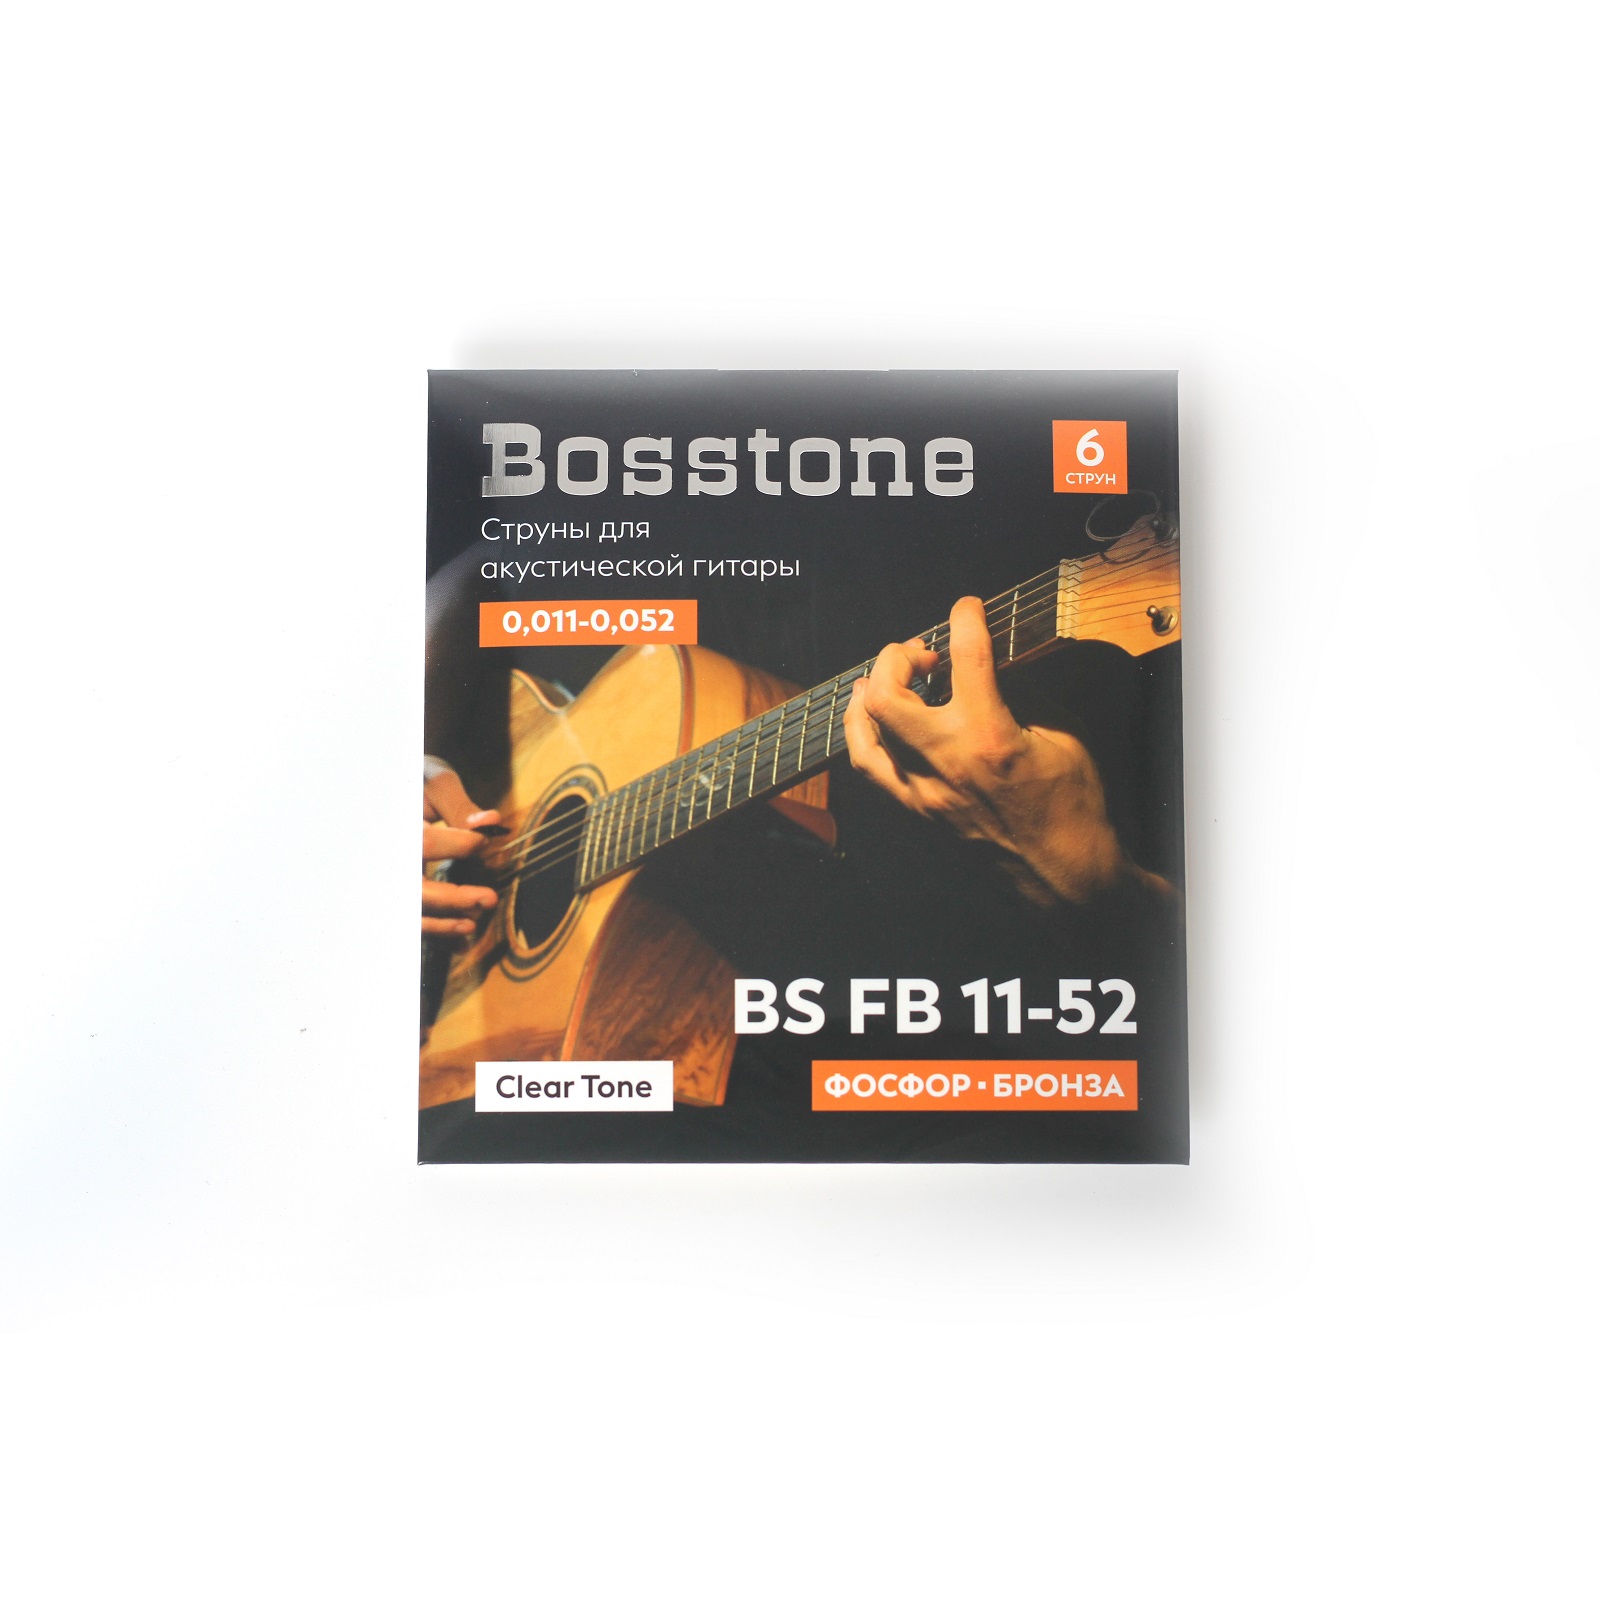 Bosstone BS FB11-52 Струны для акустической гитары фосфор бронза калибр 0,011-0,052